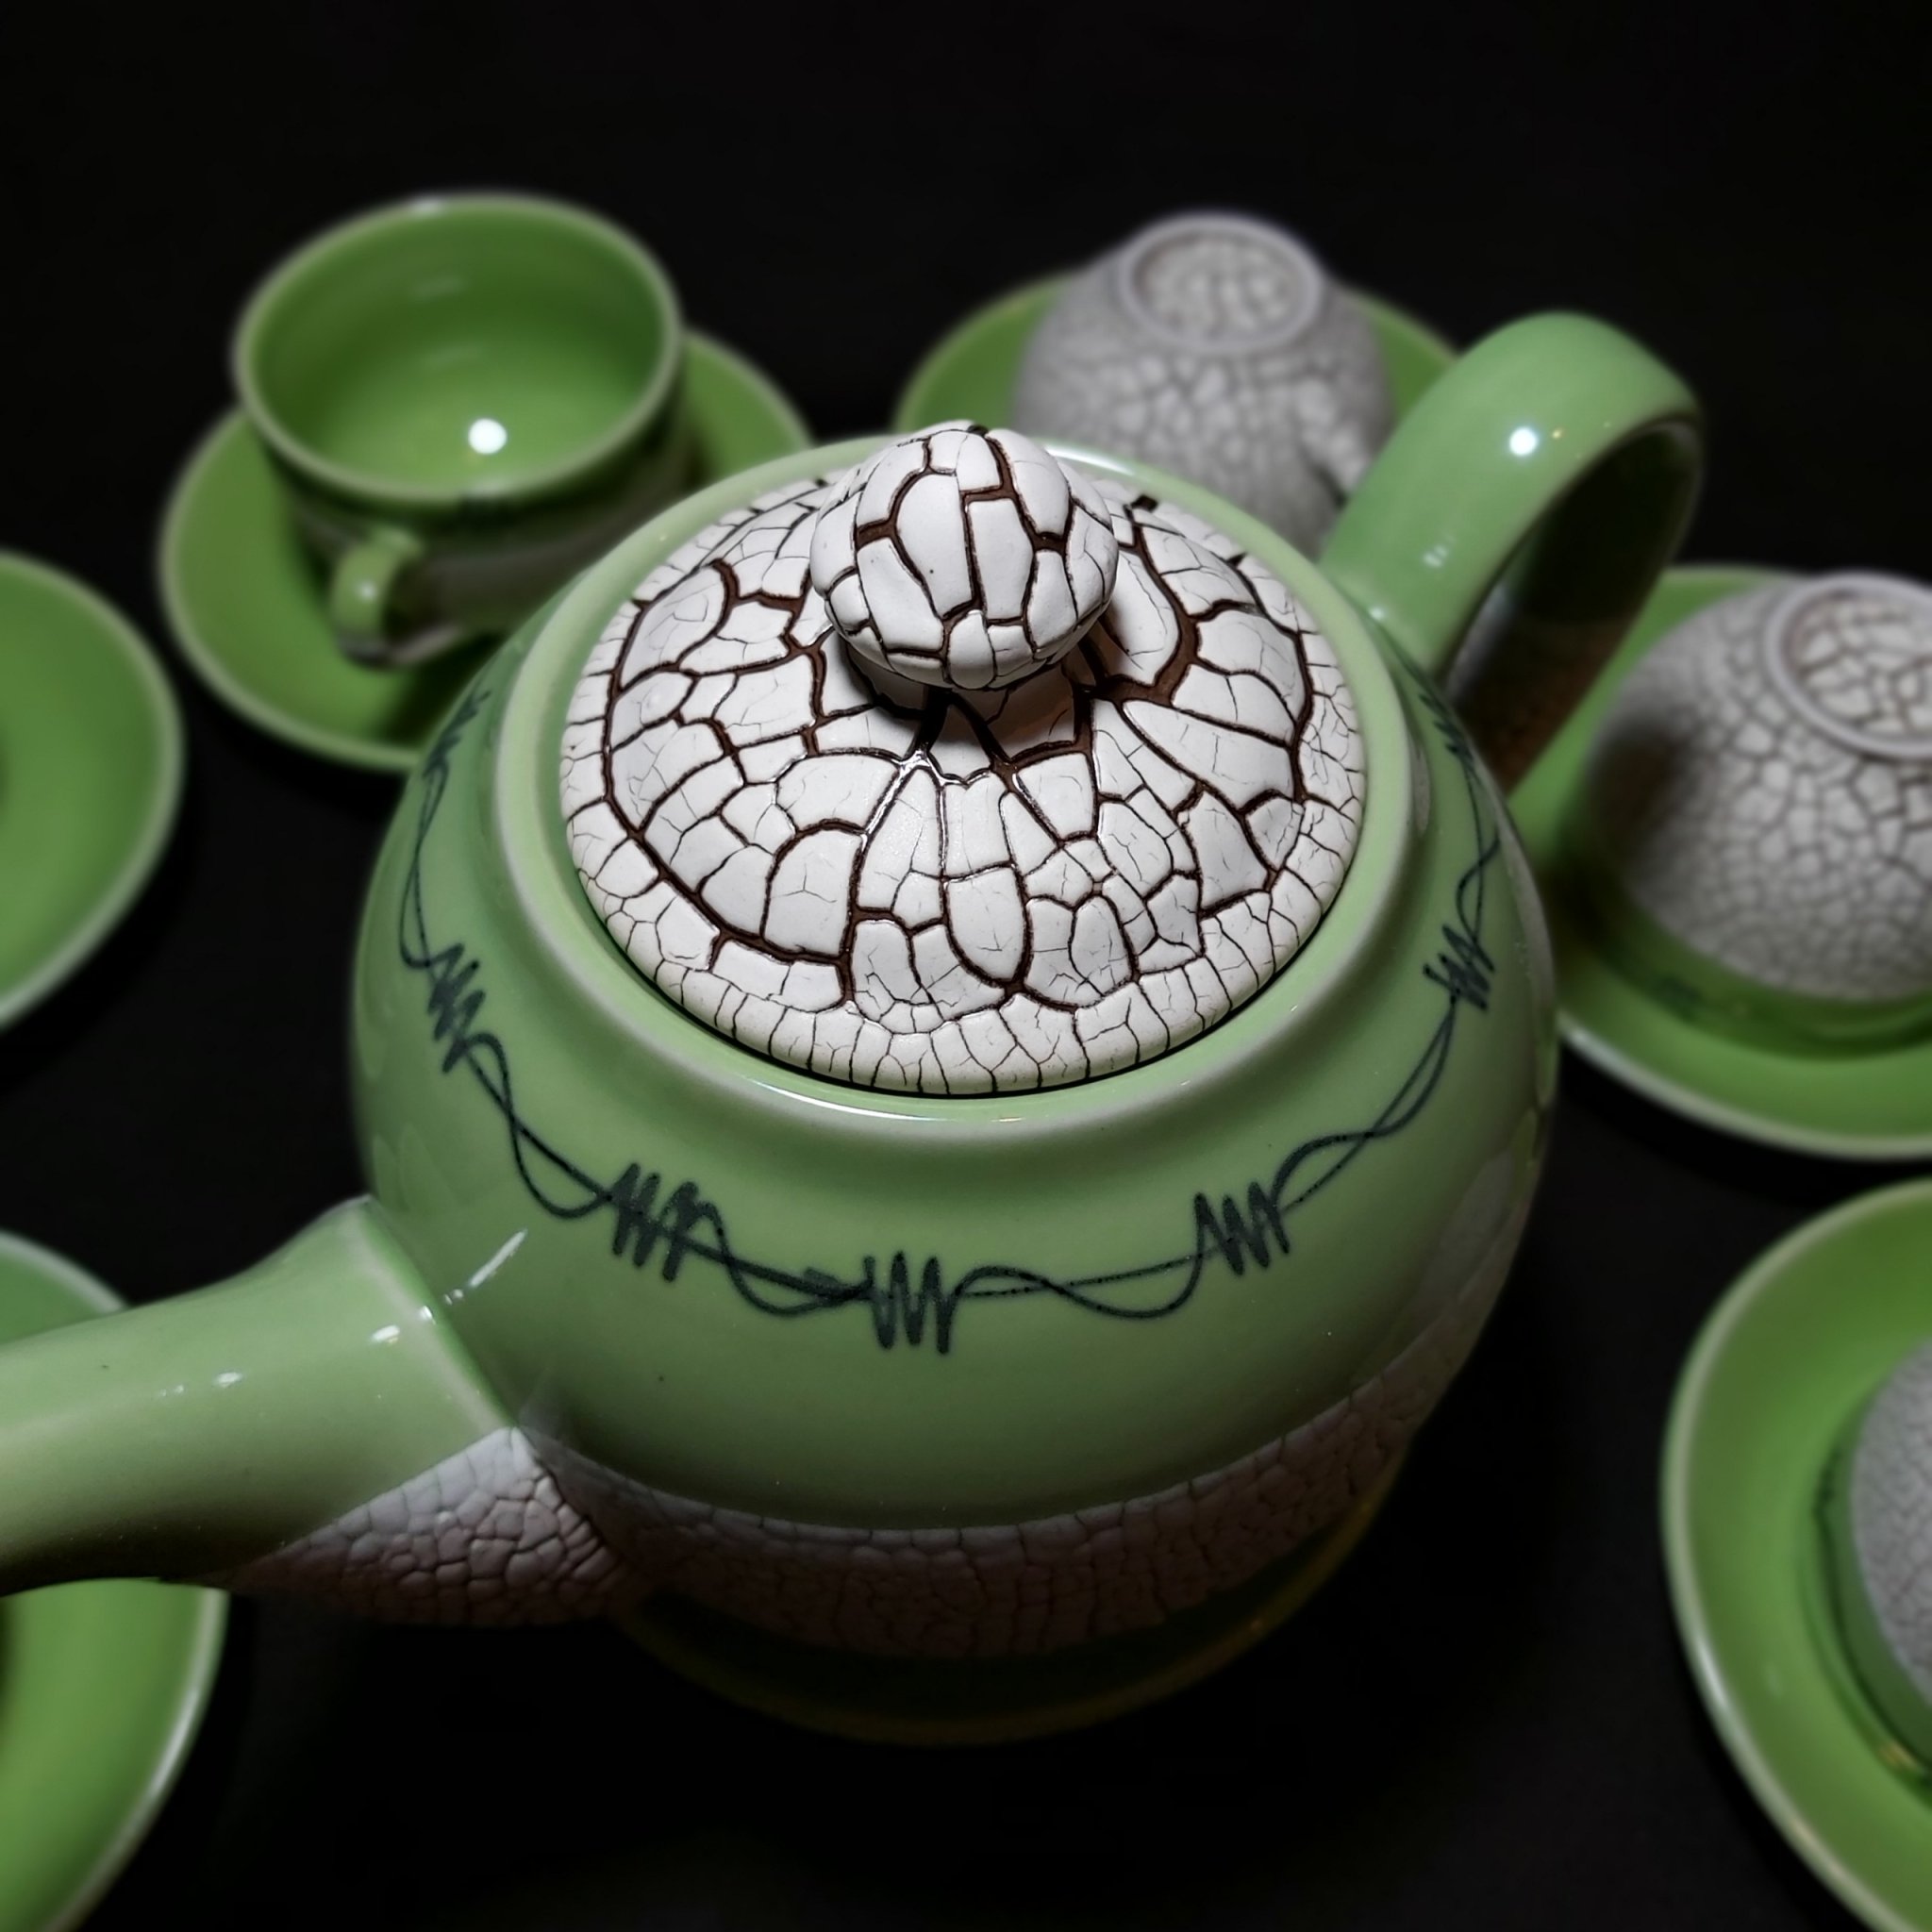 Bộ Ấm Uống trà mẫu Tròn – Hoa văn nổi sần kiểu đất nẻ cực đẹp – 1 ấm, 6 ly, 7 dĩa – Màu Xanh Lá Emerald